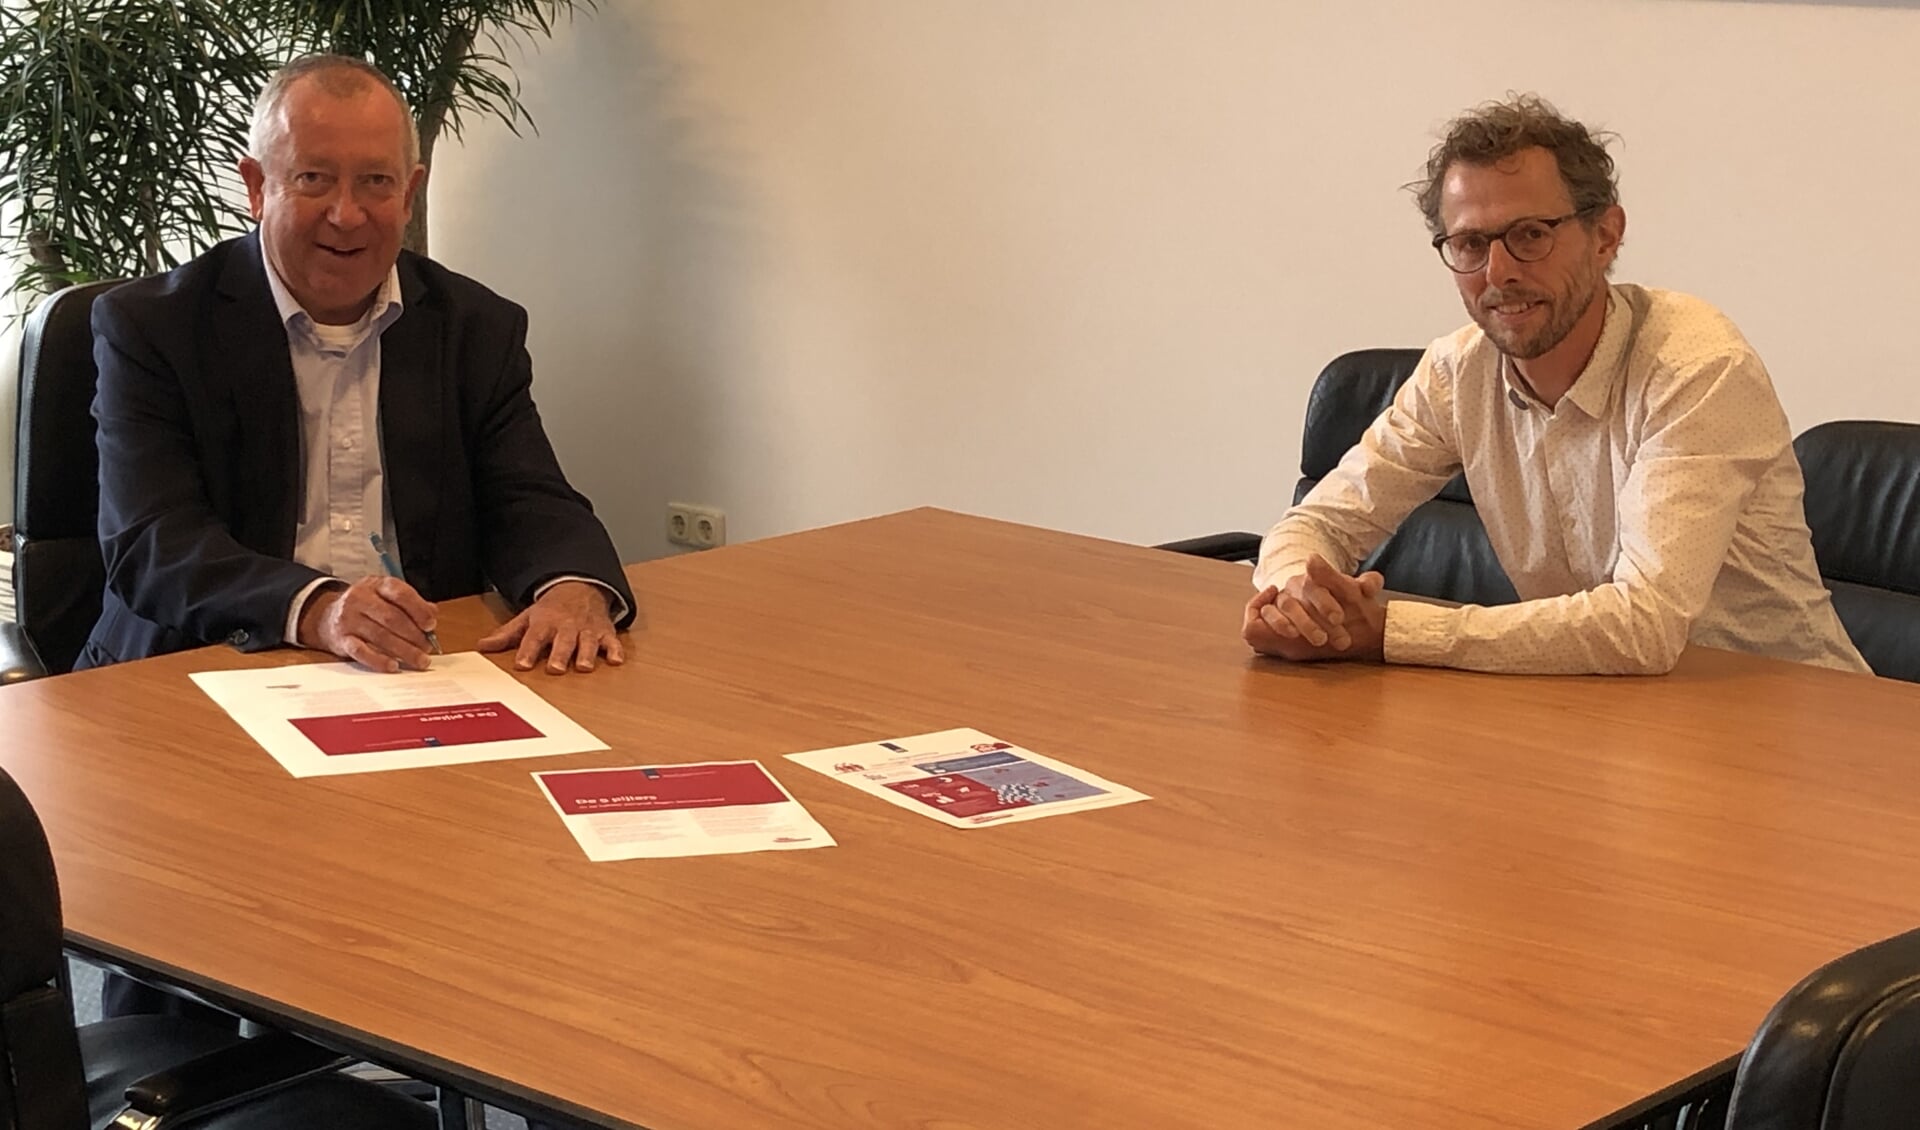 Wethouder Sjef van Elk tekent, samen met Daan de Bruijn van het
actieprogramma, het convenant Eén tegen eenzaamheid.